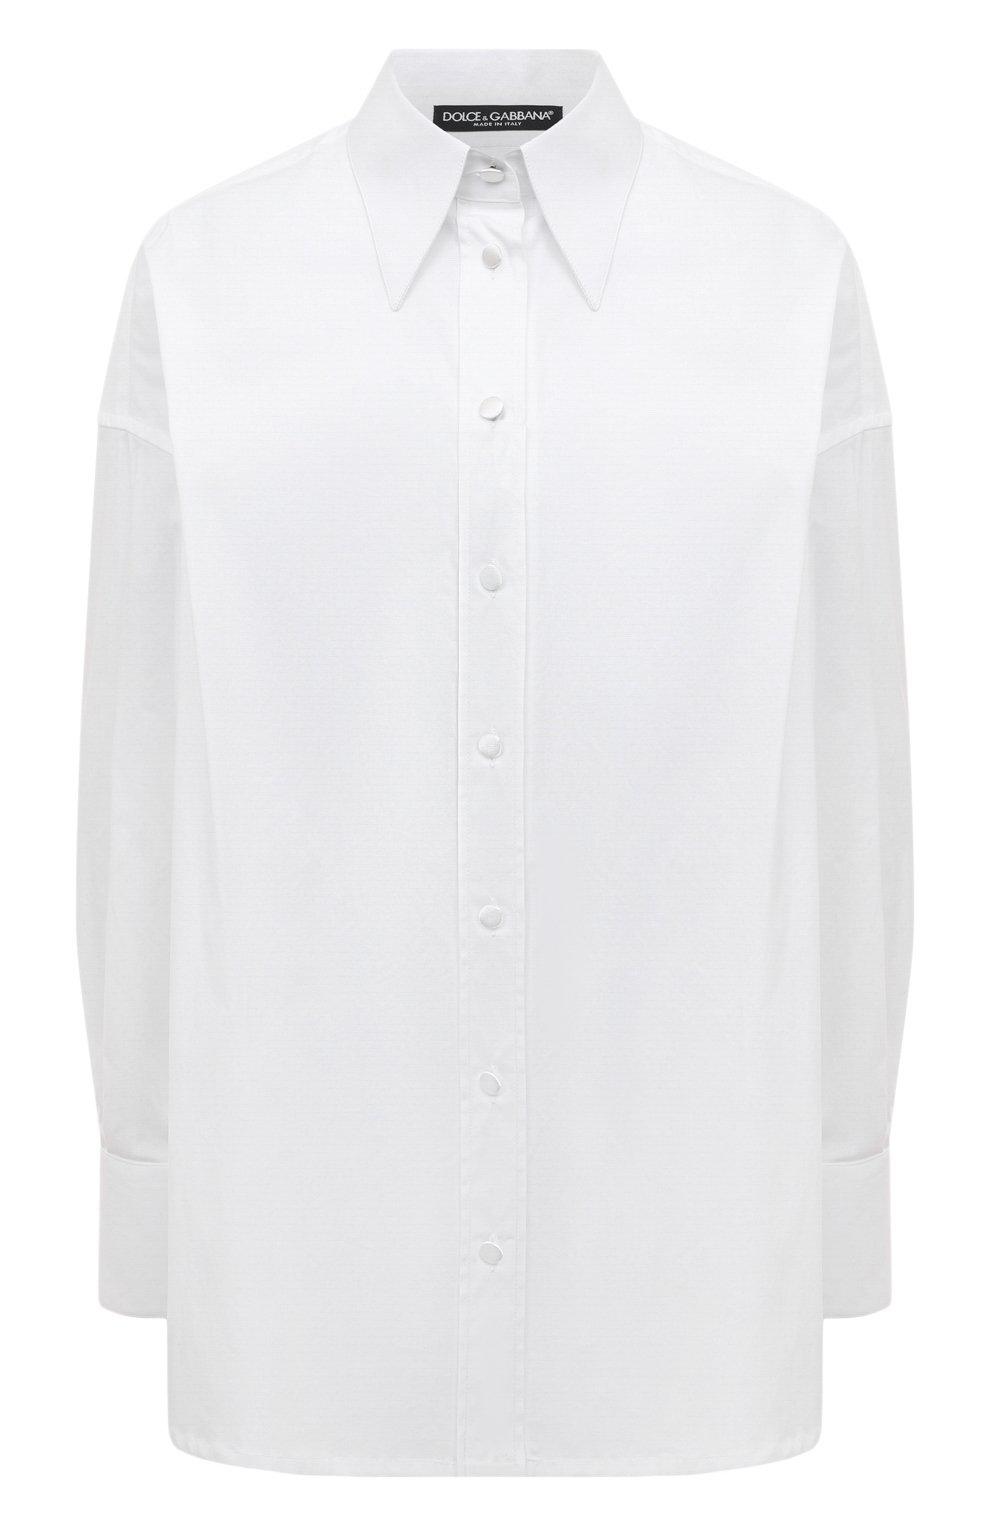 Cotton shirt, Dolce &  Gabbana, 108,000 rub.